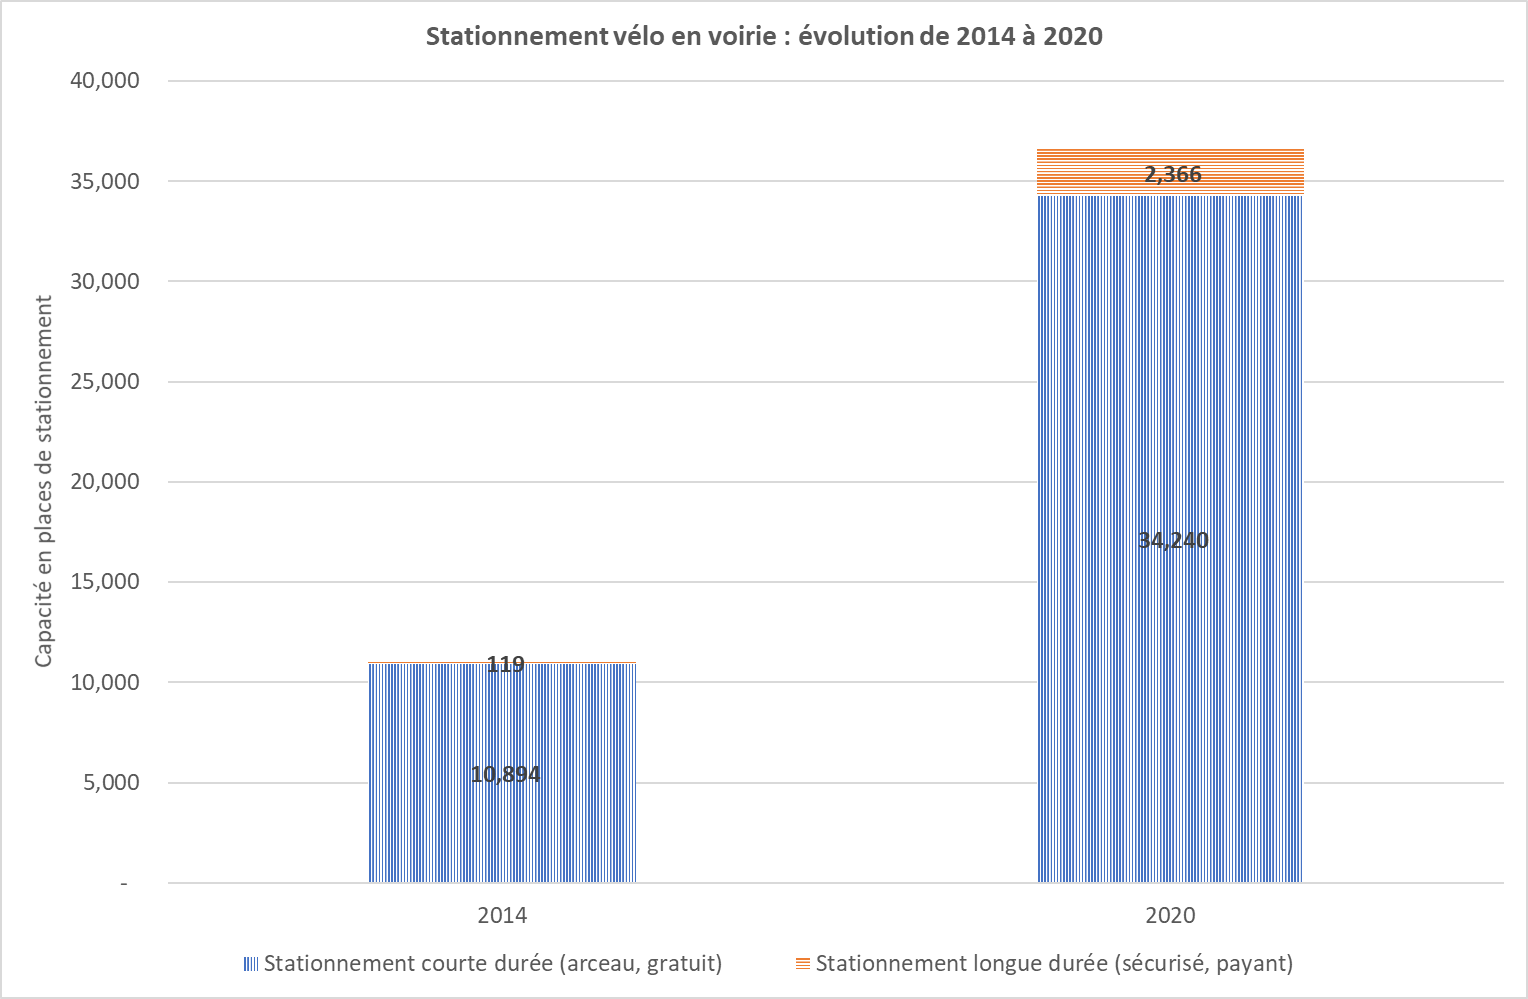 Graphique représentant le stationnement vélo public : évolution de 2014 à 2020.